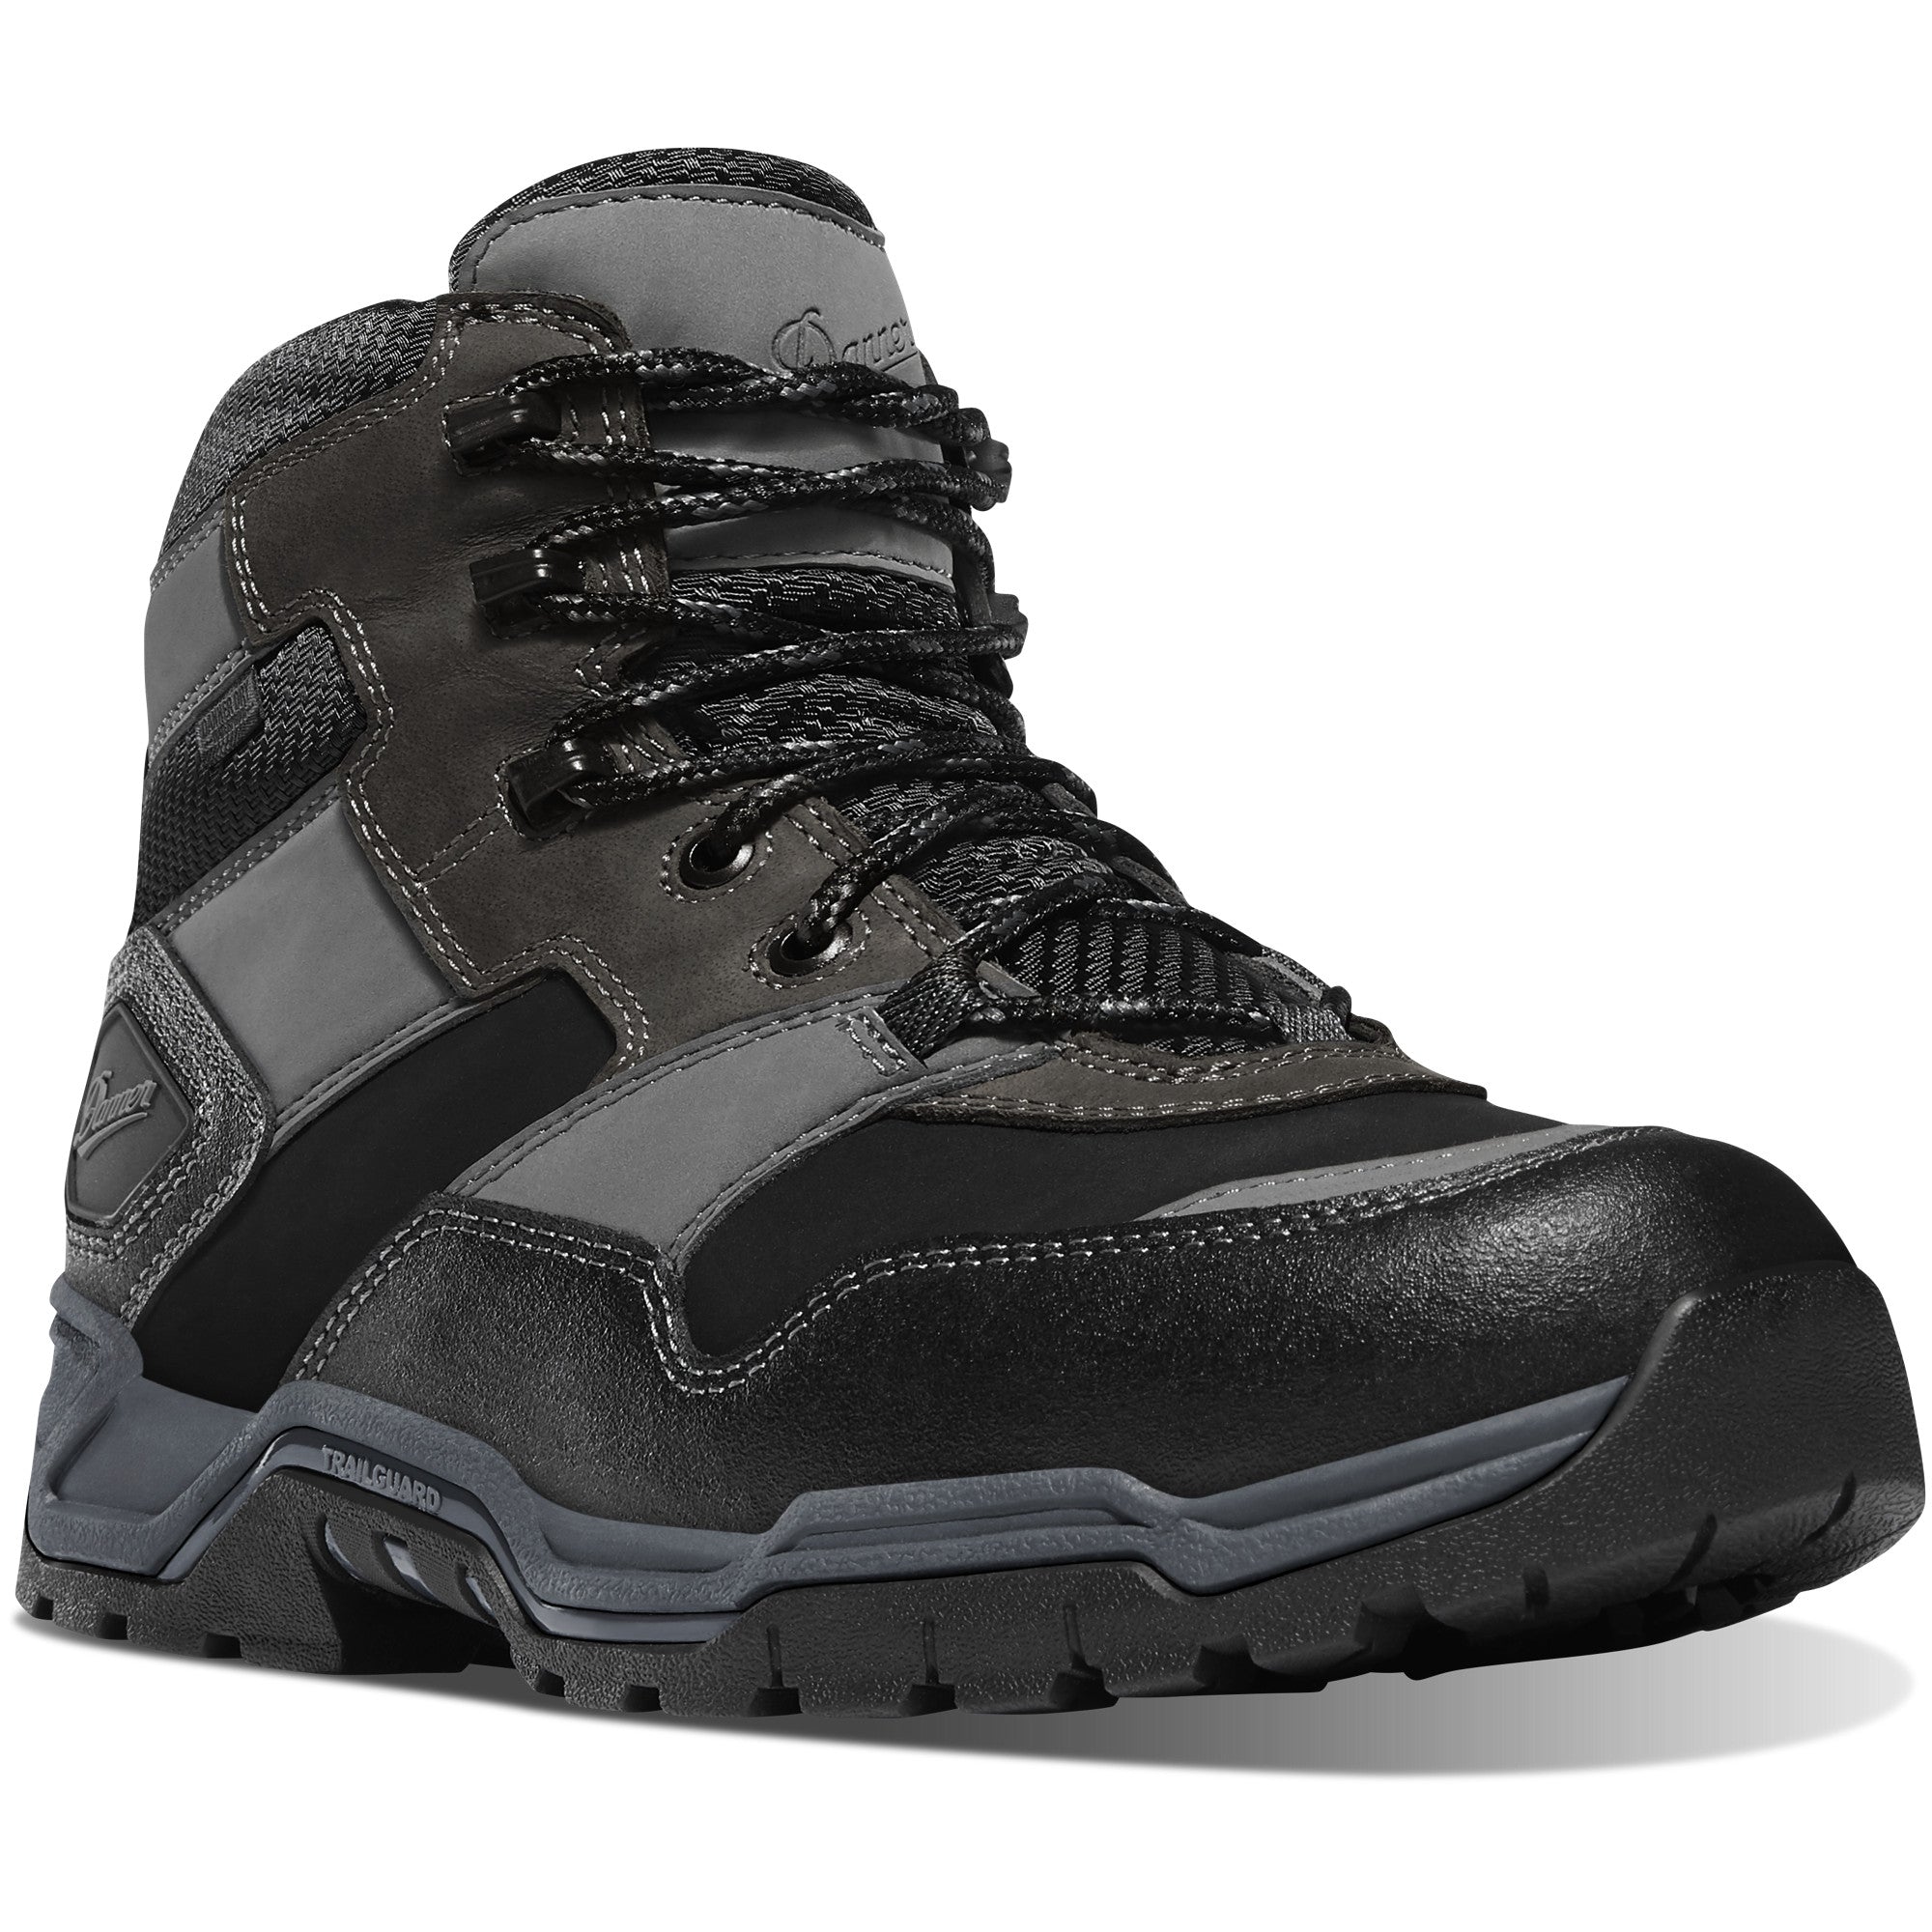 Danner Men's Field ranger 6" Comp Toe WP Work Boot - Gray - 15163 7 / Medium / Gray - Overlook Boots